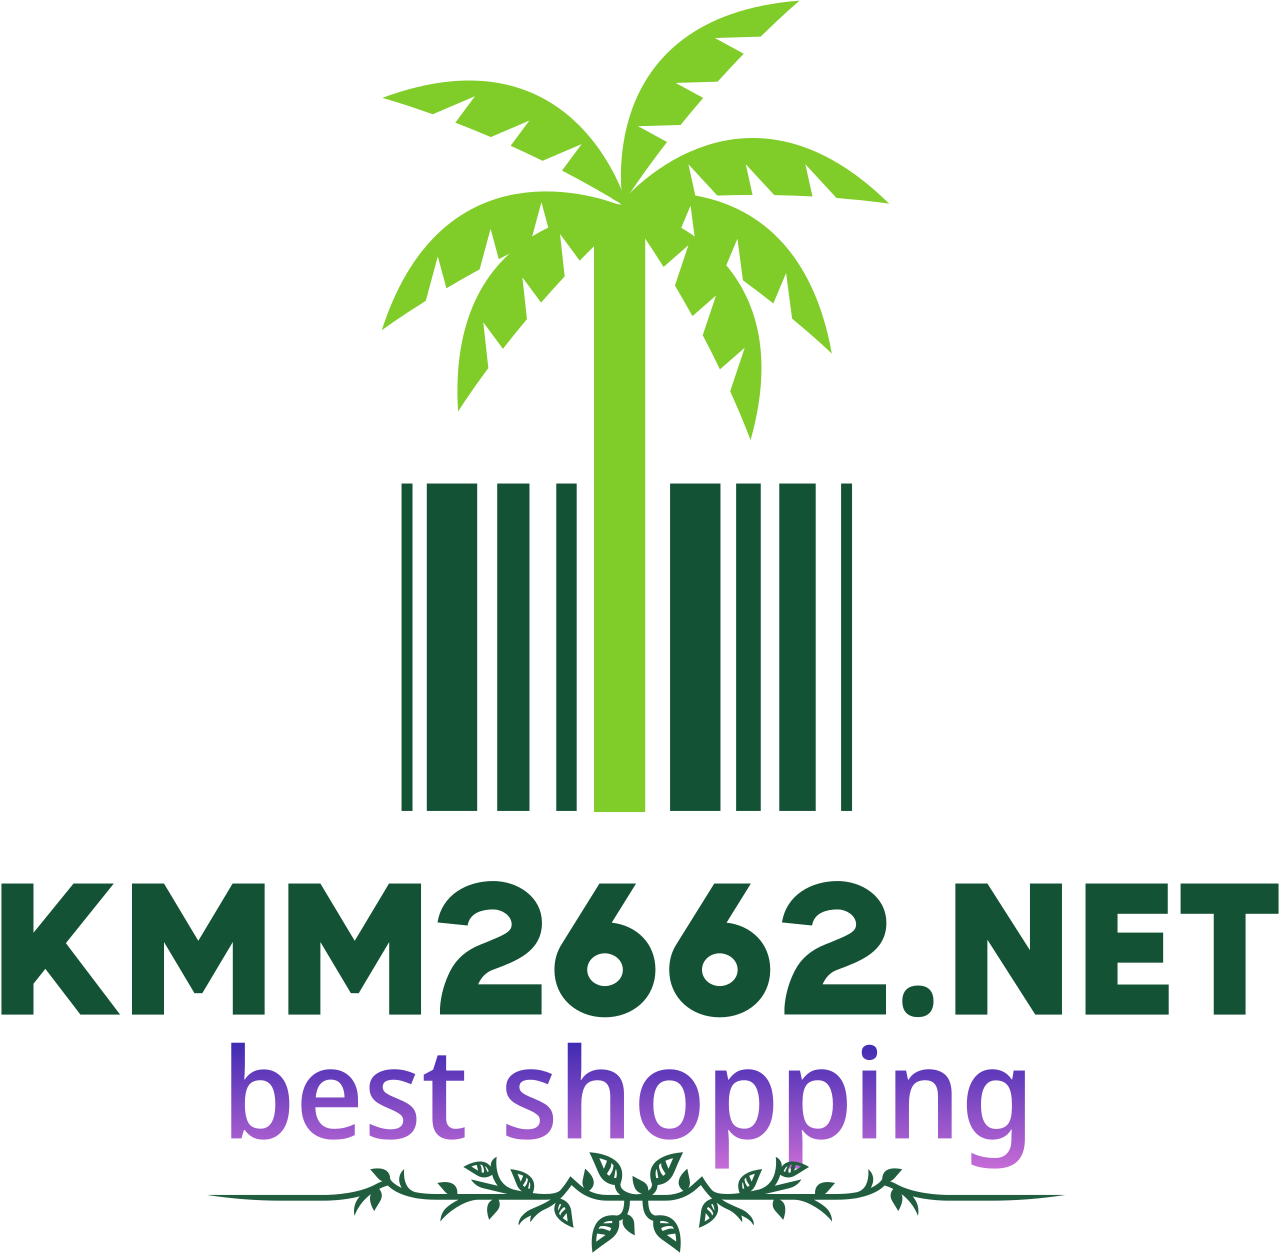 kmm2662.net's web page